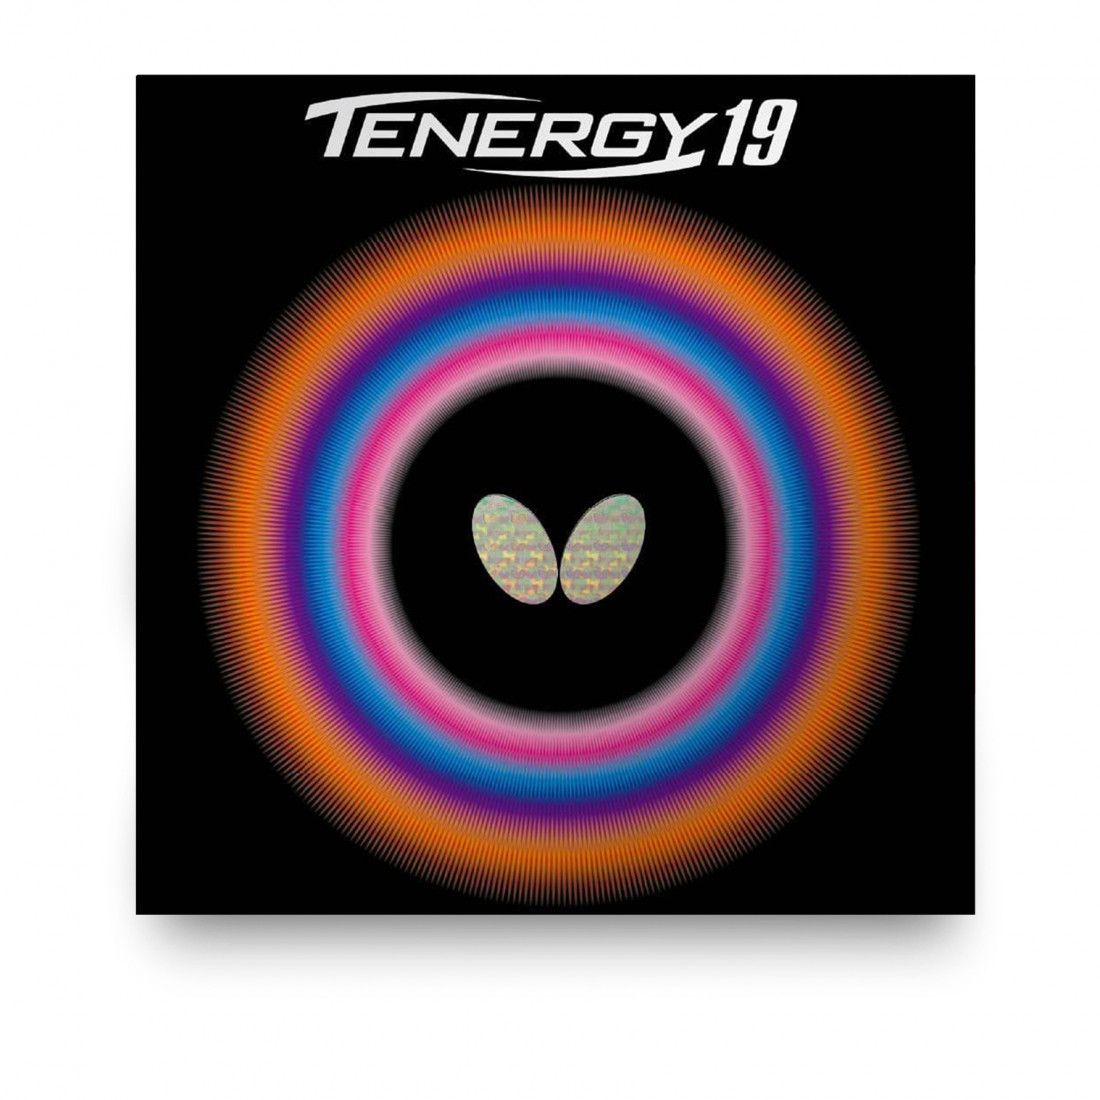 Накладка на ракетку для настольного тенниса Butterfly Tenergy 19 2.1 накладка красная